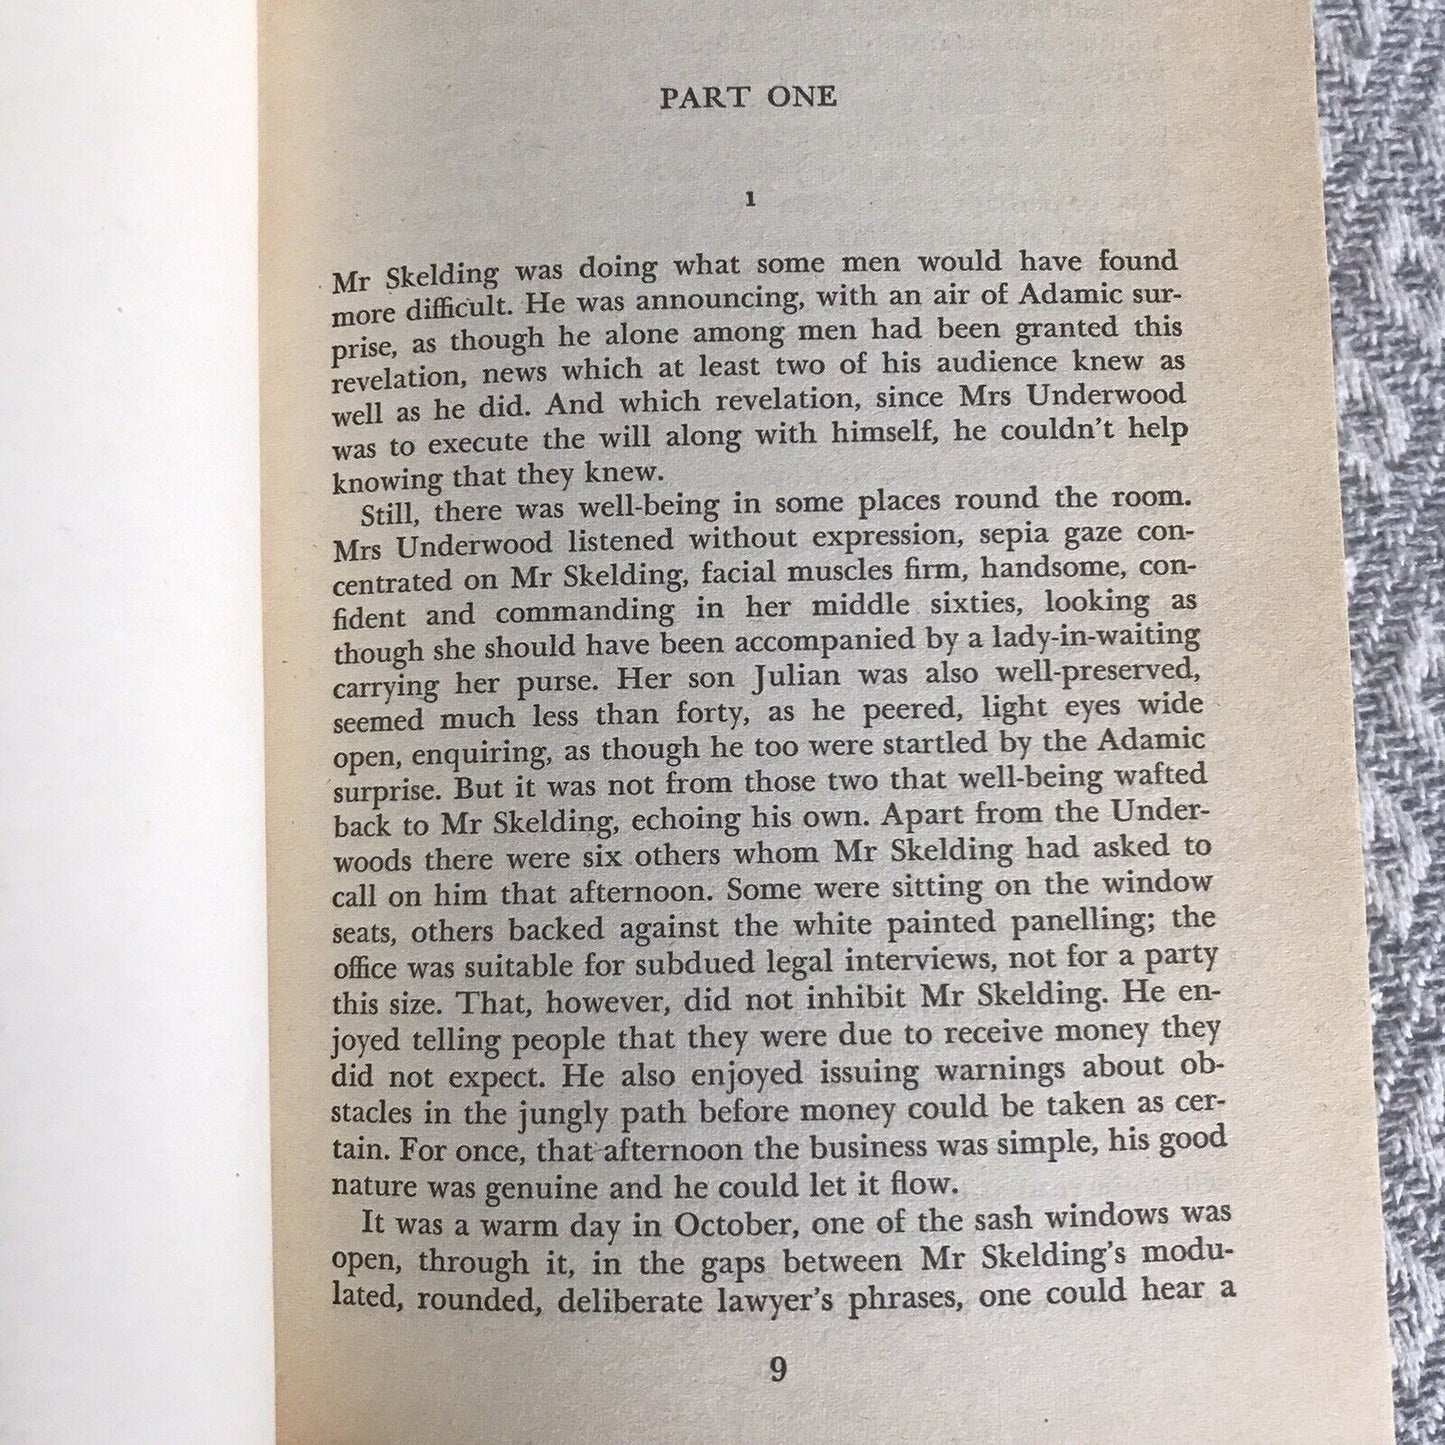 1975 In Their Wisdom - C. P. Snow(Book Club)